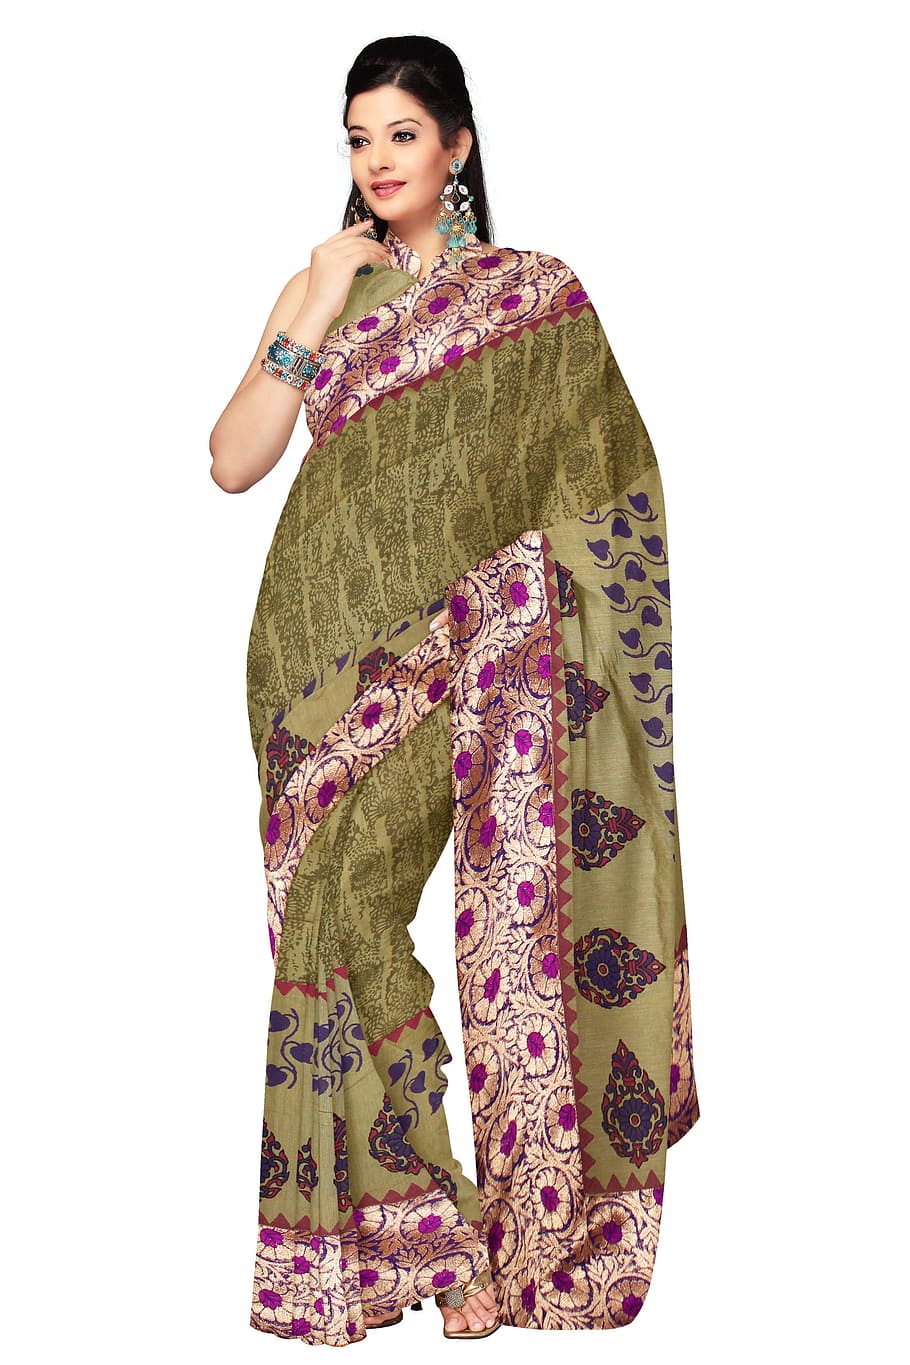 vistiendo, verde, rosa, vestido de sari, mujer, moda, sari, seda, vestido, modelo